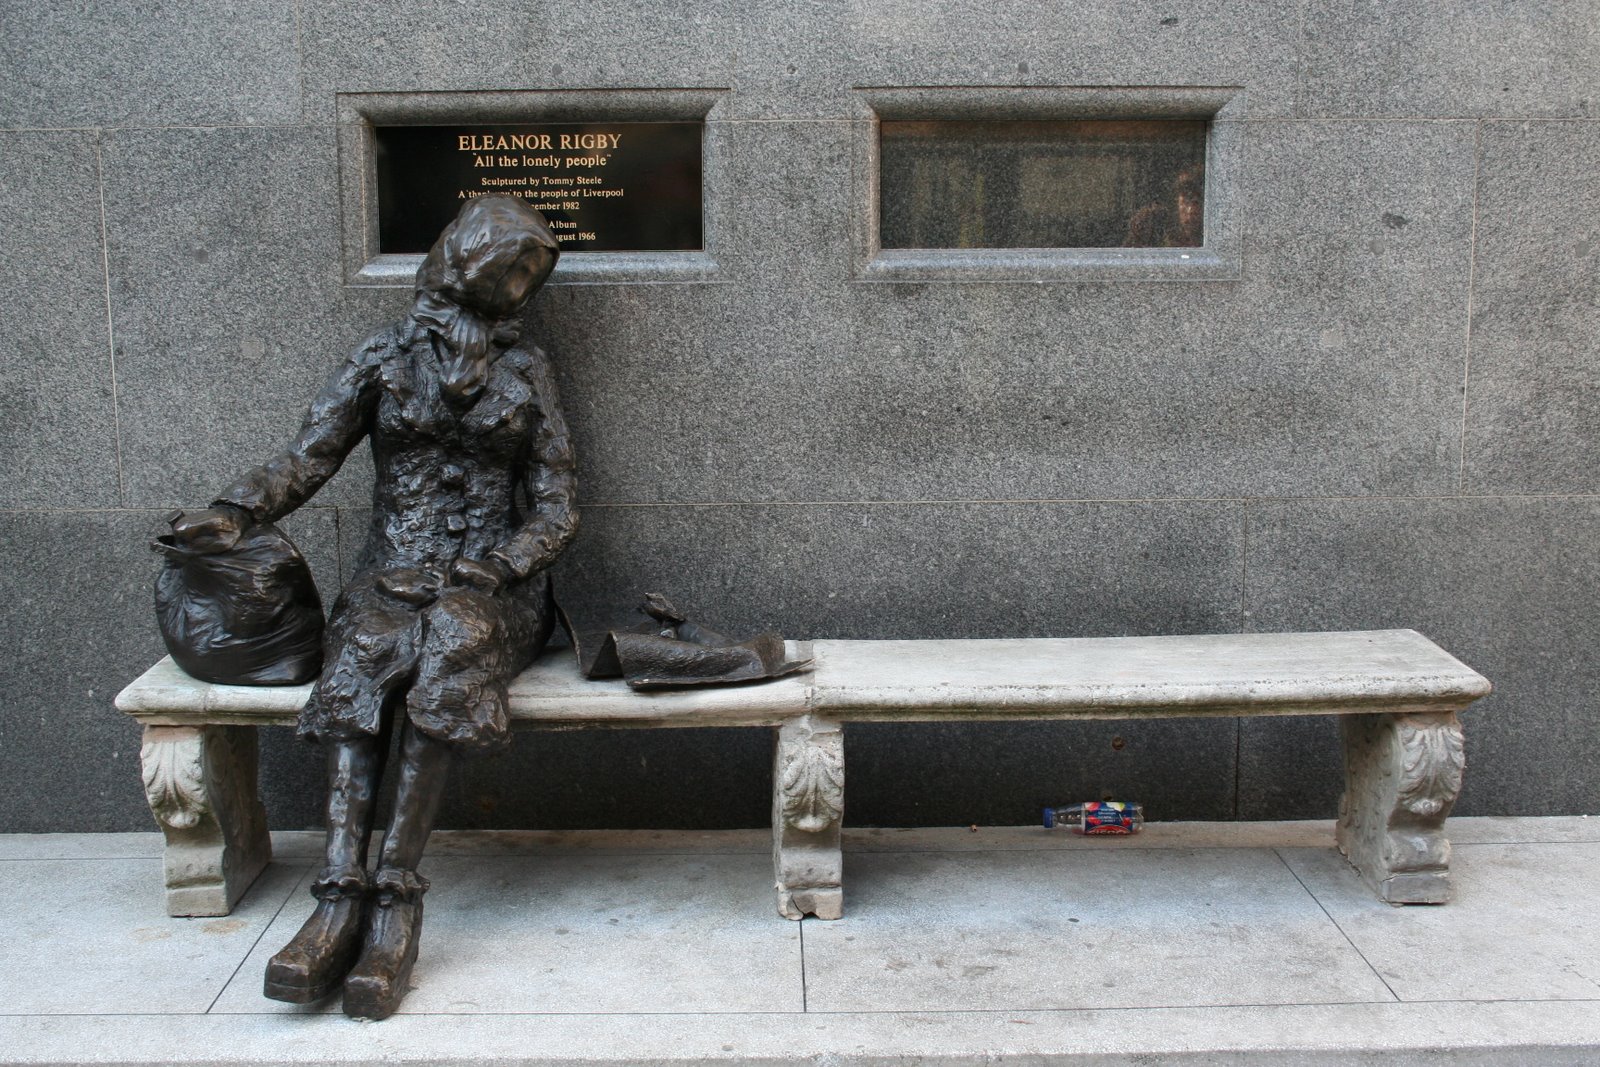 Памятник Элеанор Ригби в Ливерпуле. Иллюстрация к песне Eleanor Rigby (The Beatles)